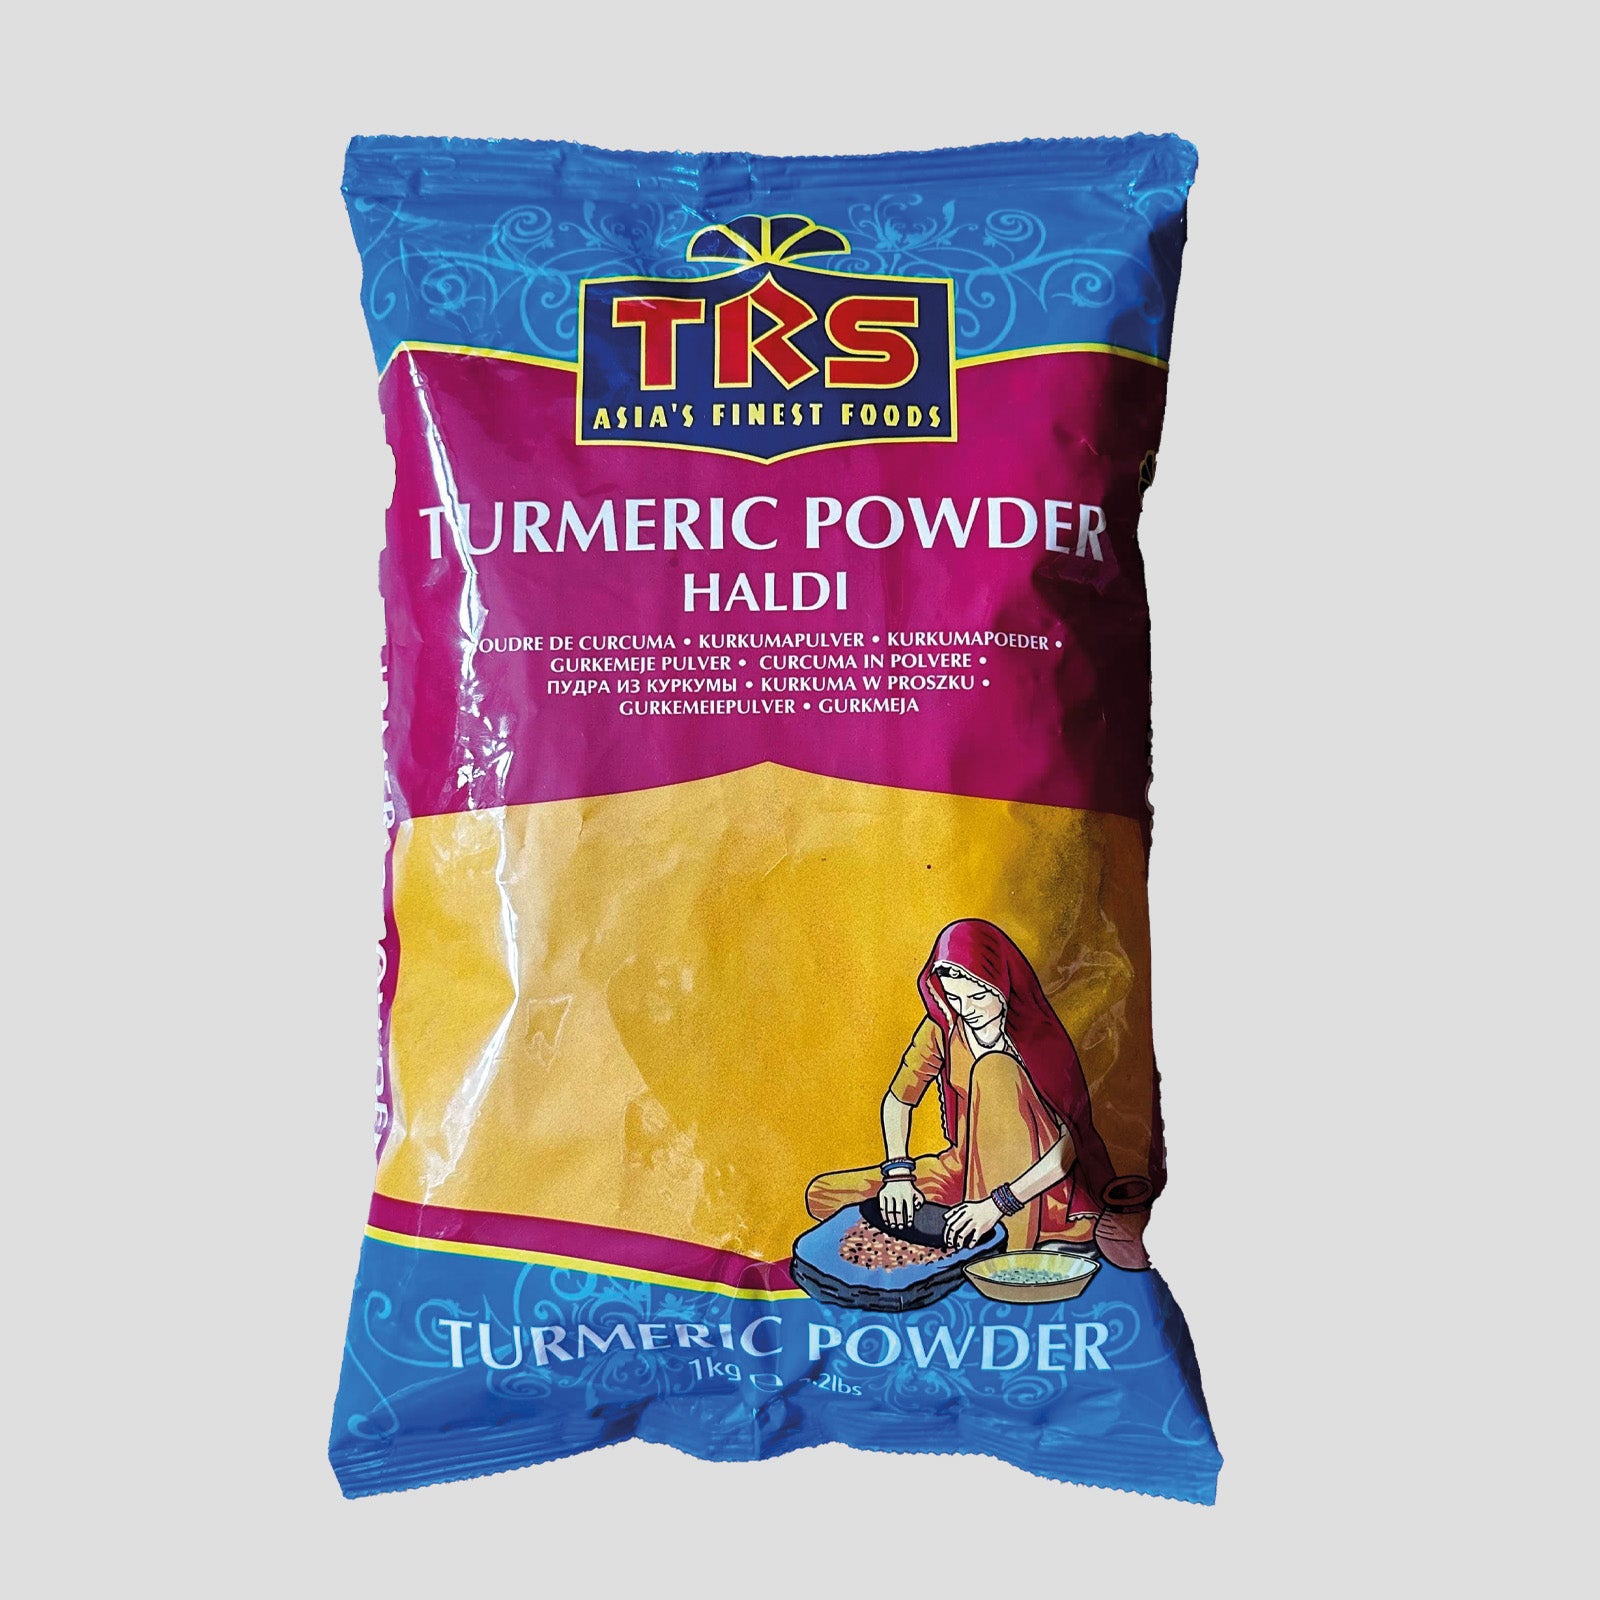 TRS - Haldi (Turmeric) Powder